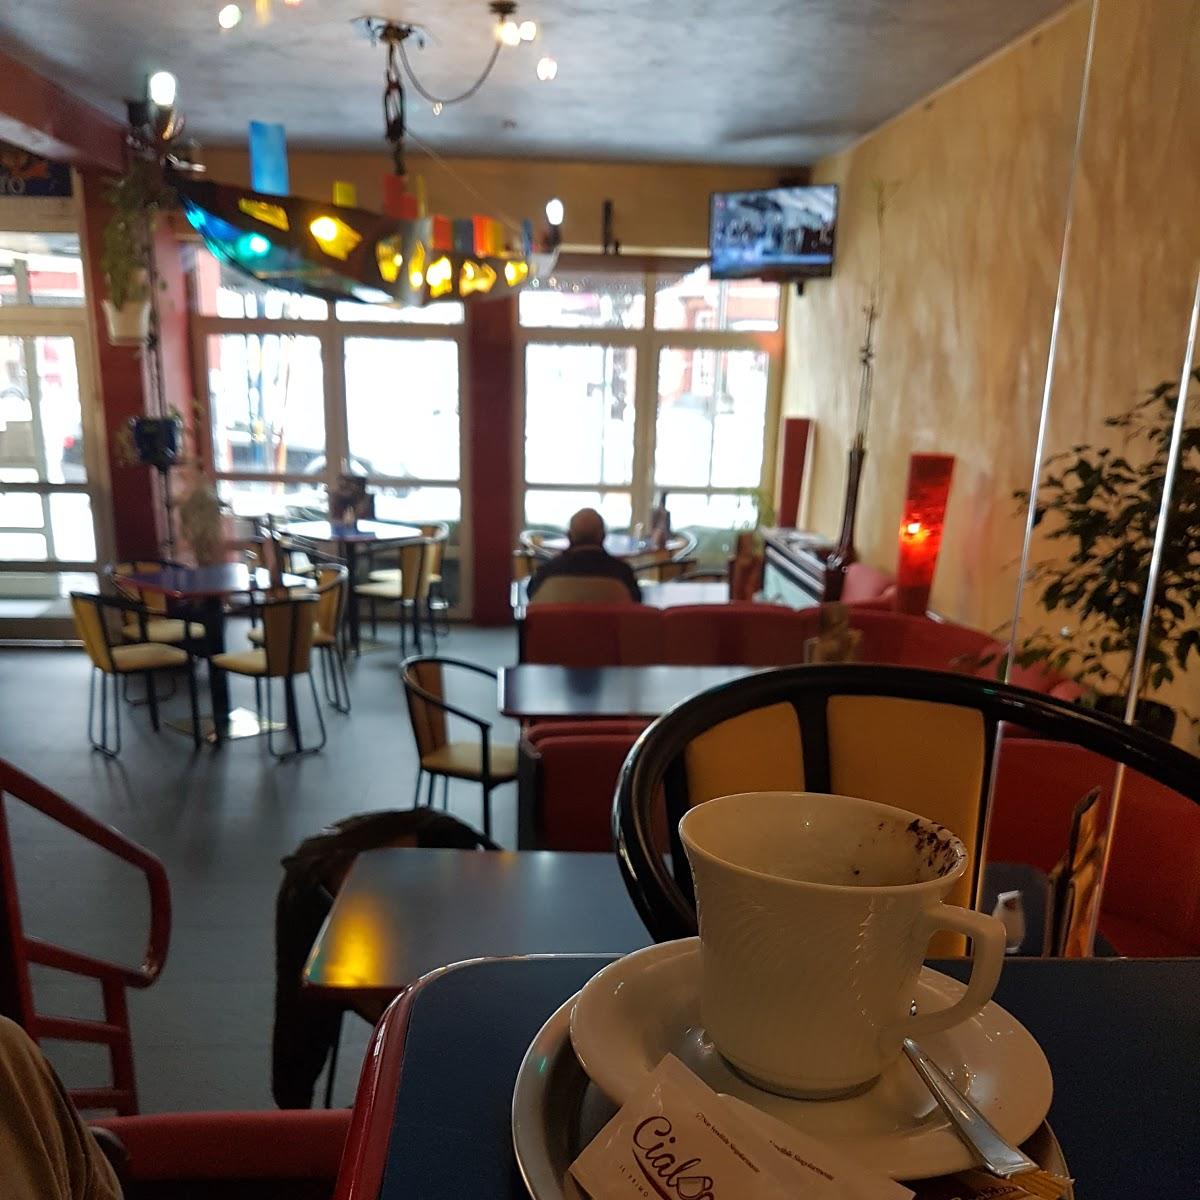 Restaurant "Eiscafé Rialto" in Spaichingen